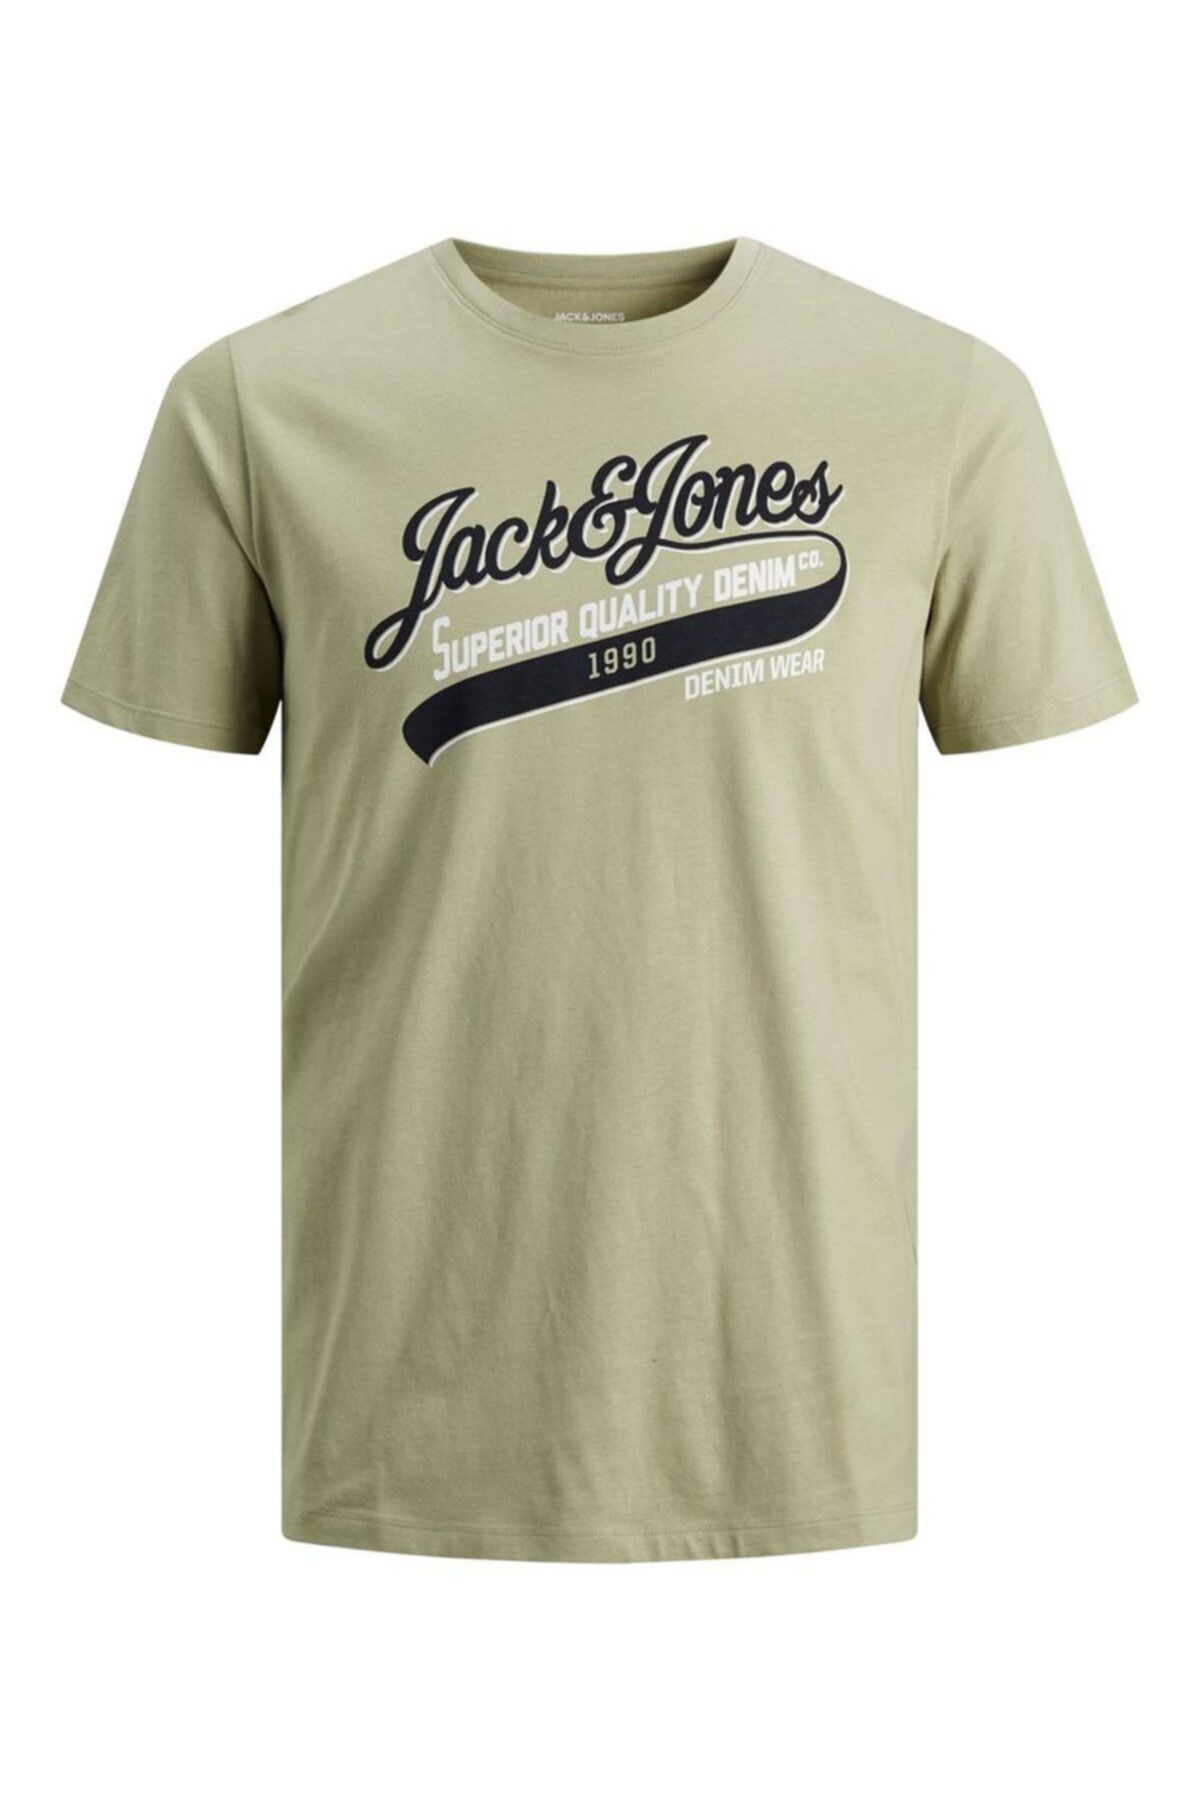 تی شرت مردانه خاکی جک اند جونز Jack & Jones (برند دانمارک)